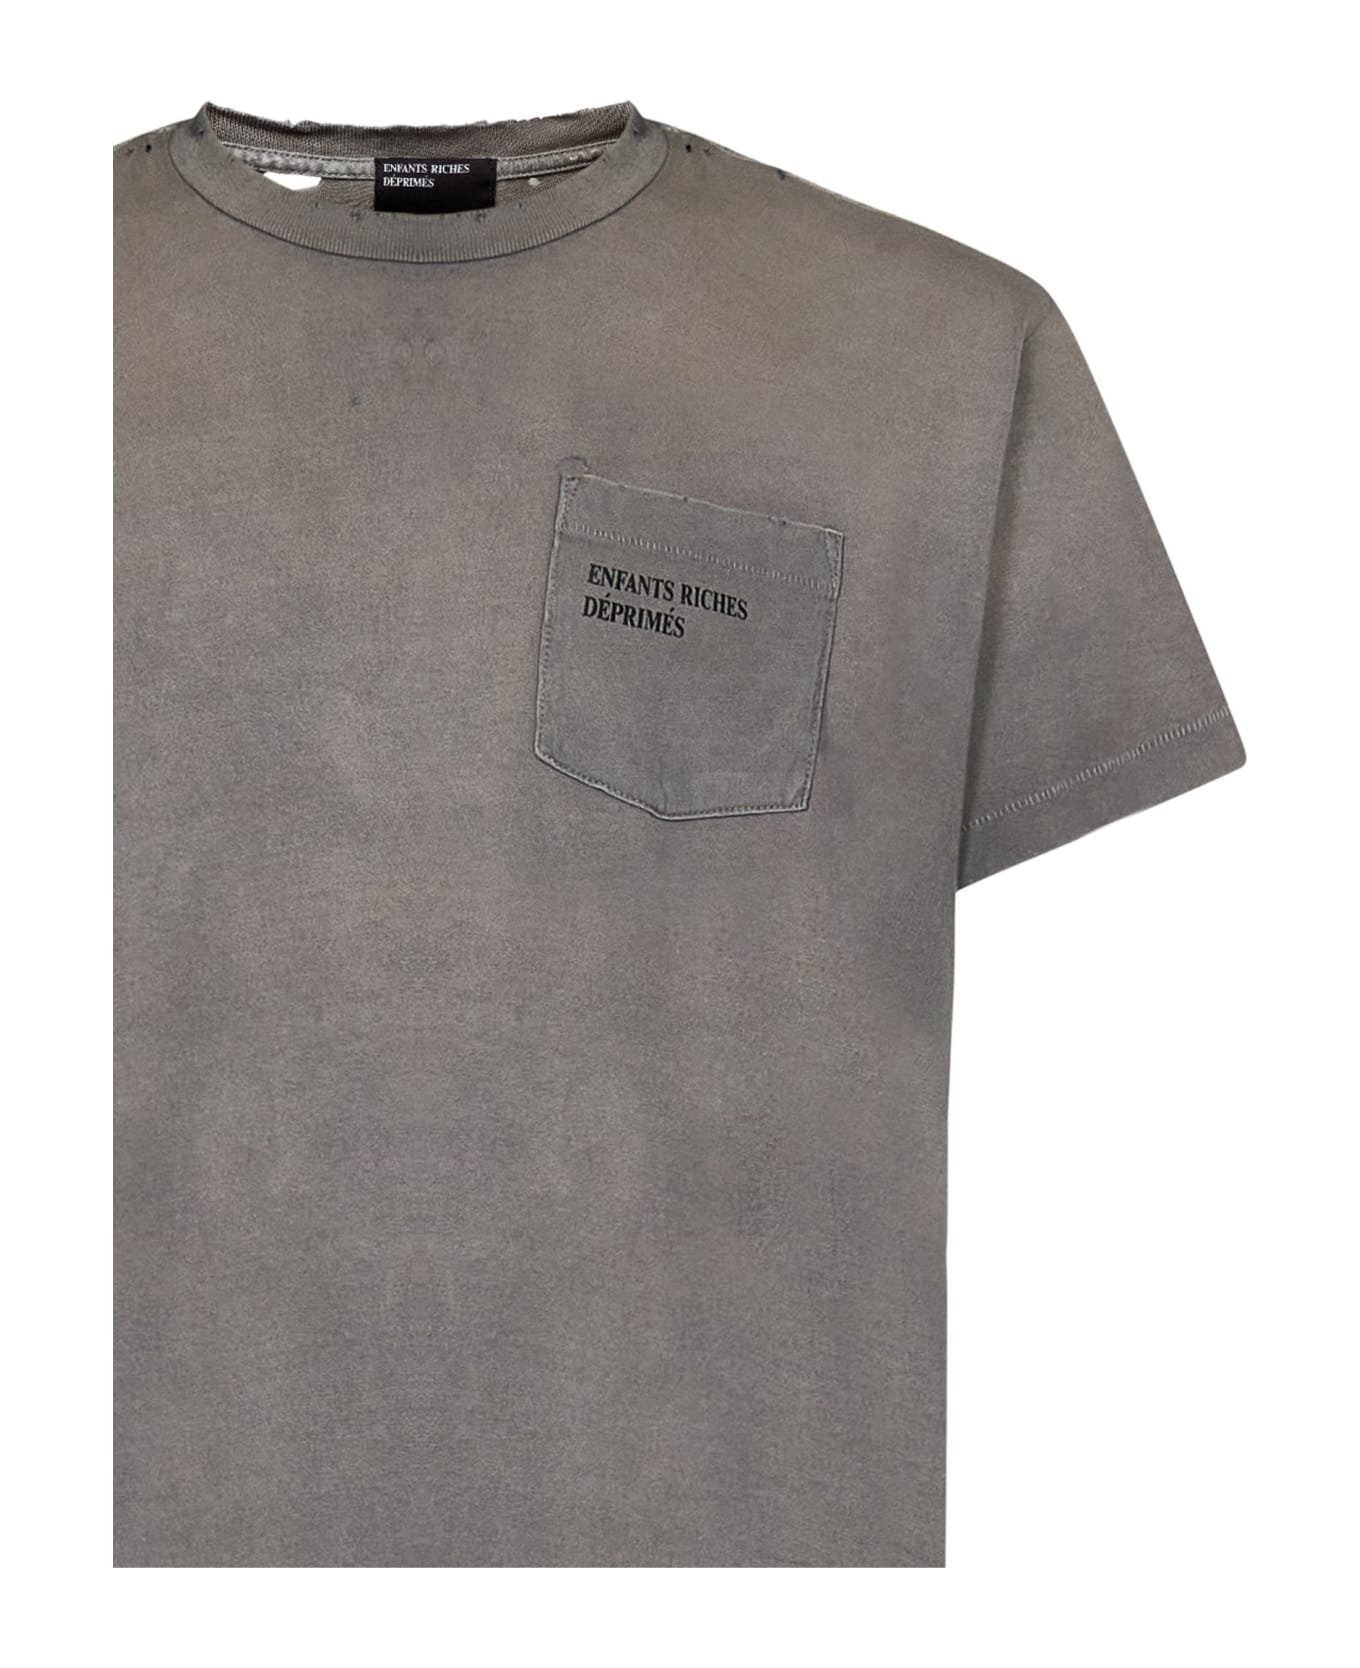 Enfants Riches Deprimes T-shirt - Grey